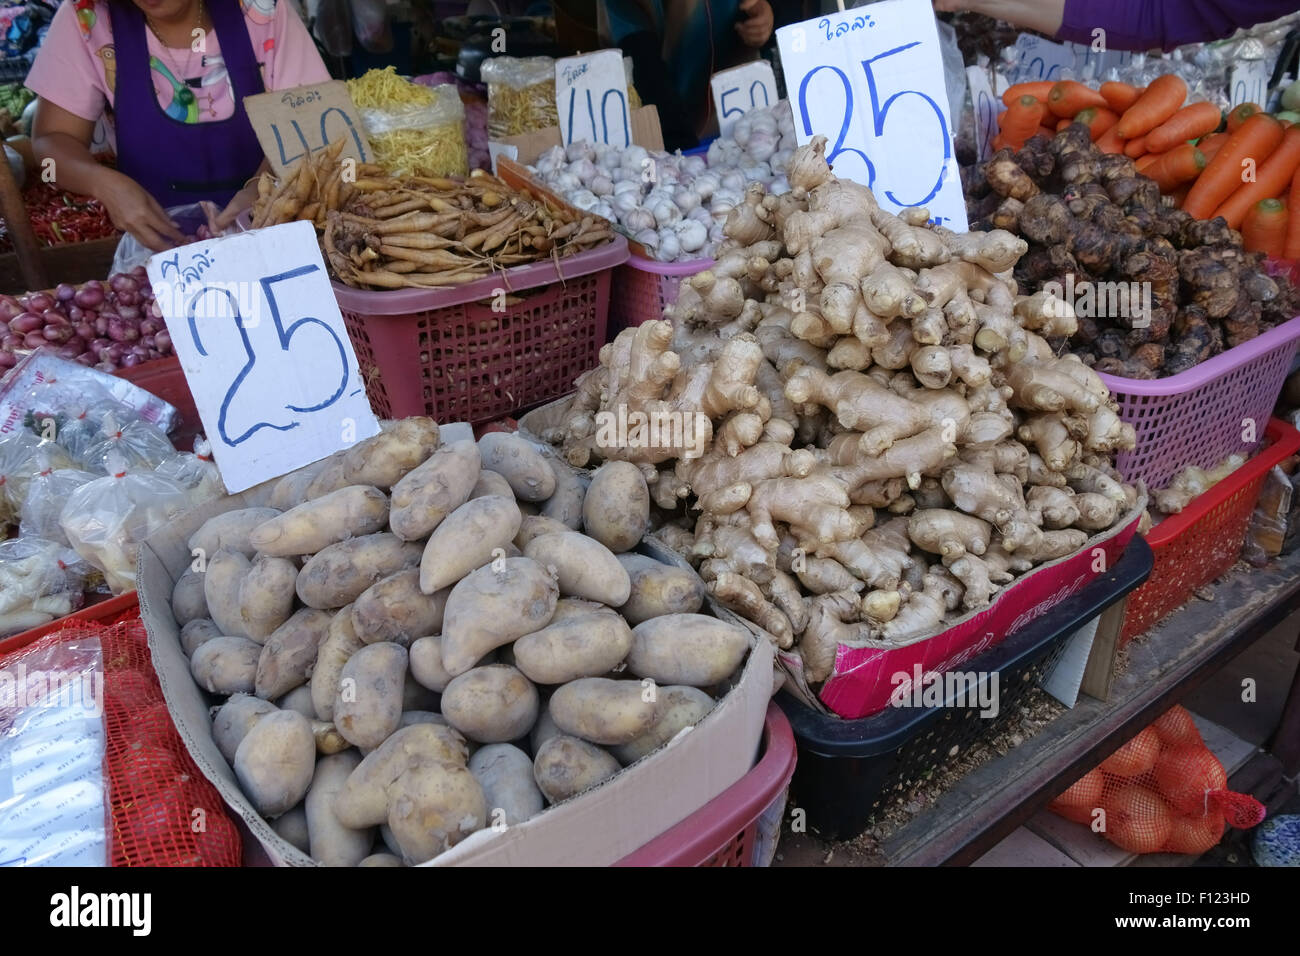 Las cosechas de la raíz incluida la patata, el jengibre, el ajo, los chalotes, zanahorias y otros vegetales en un puesto en un mercado de alimentos en Bangkok, Tailandia Foto de stock